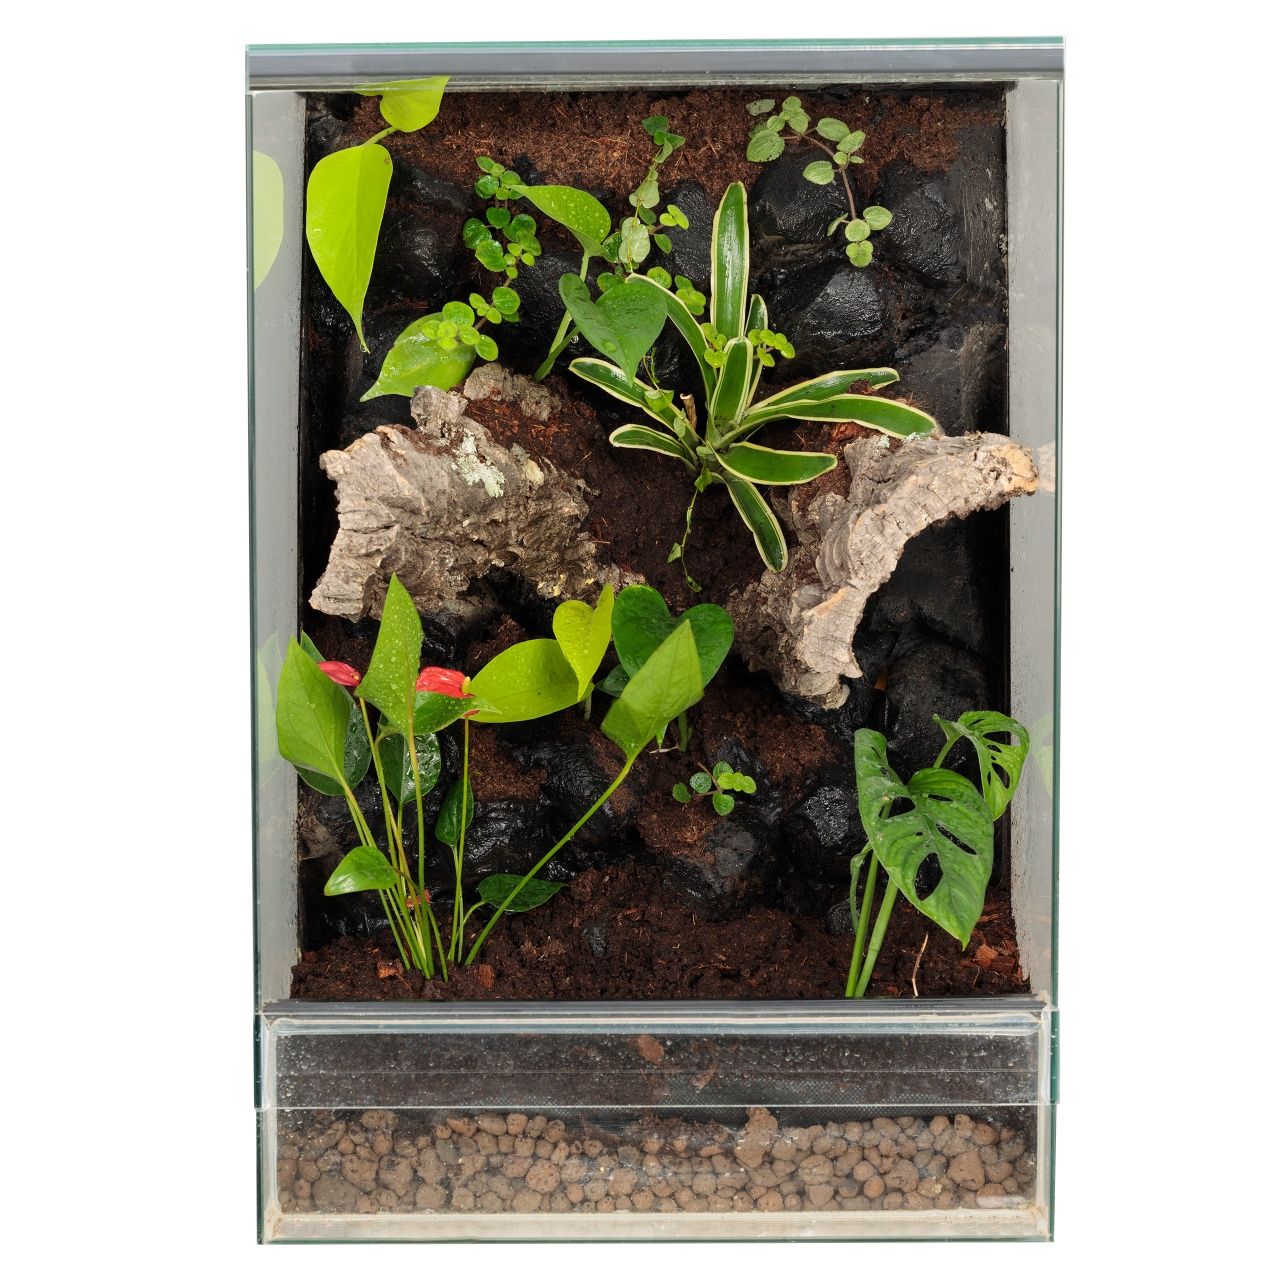 Paludarium vivarium terrarium gekon